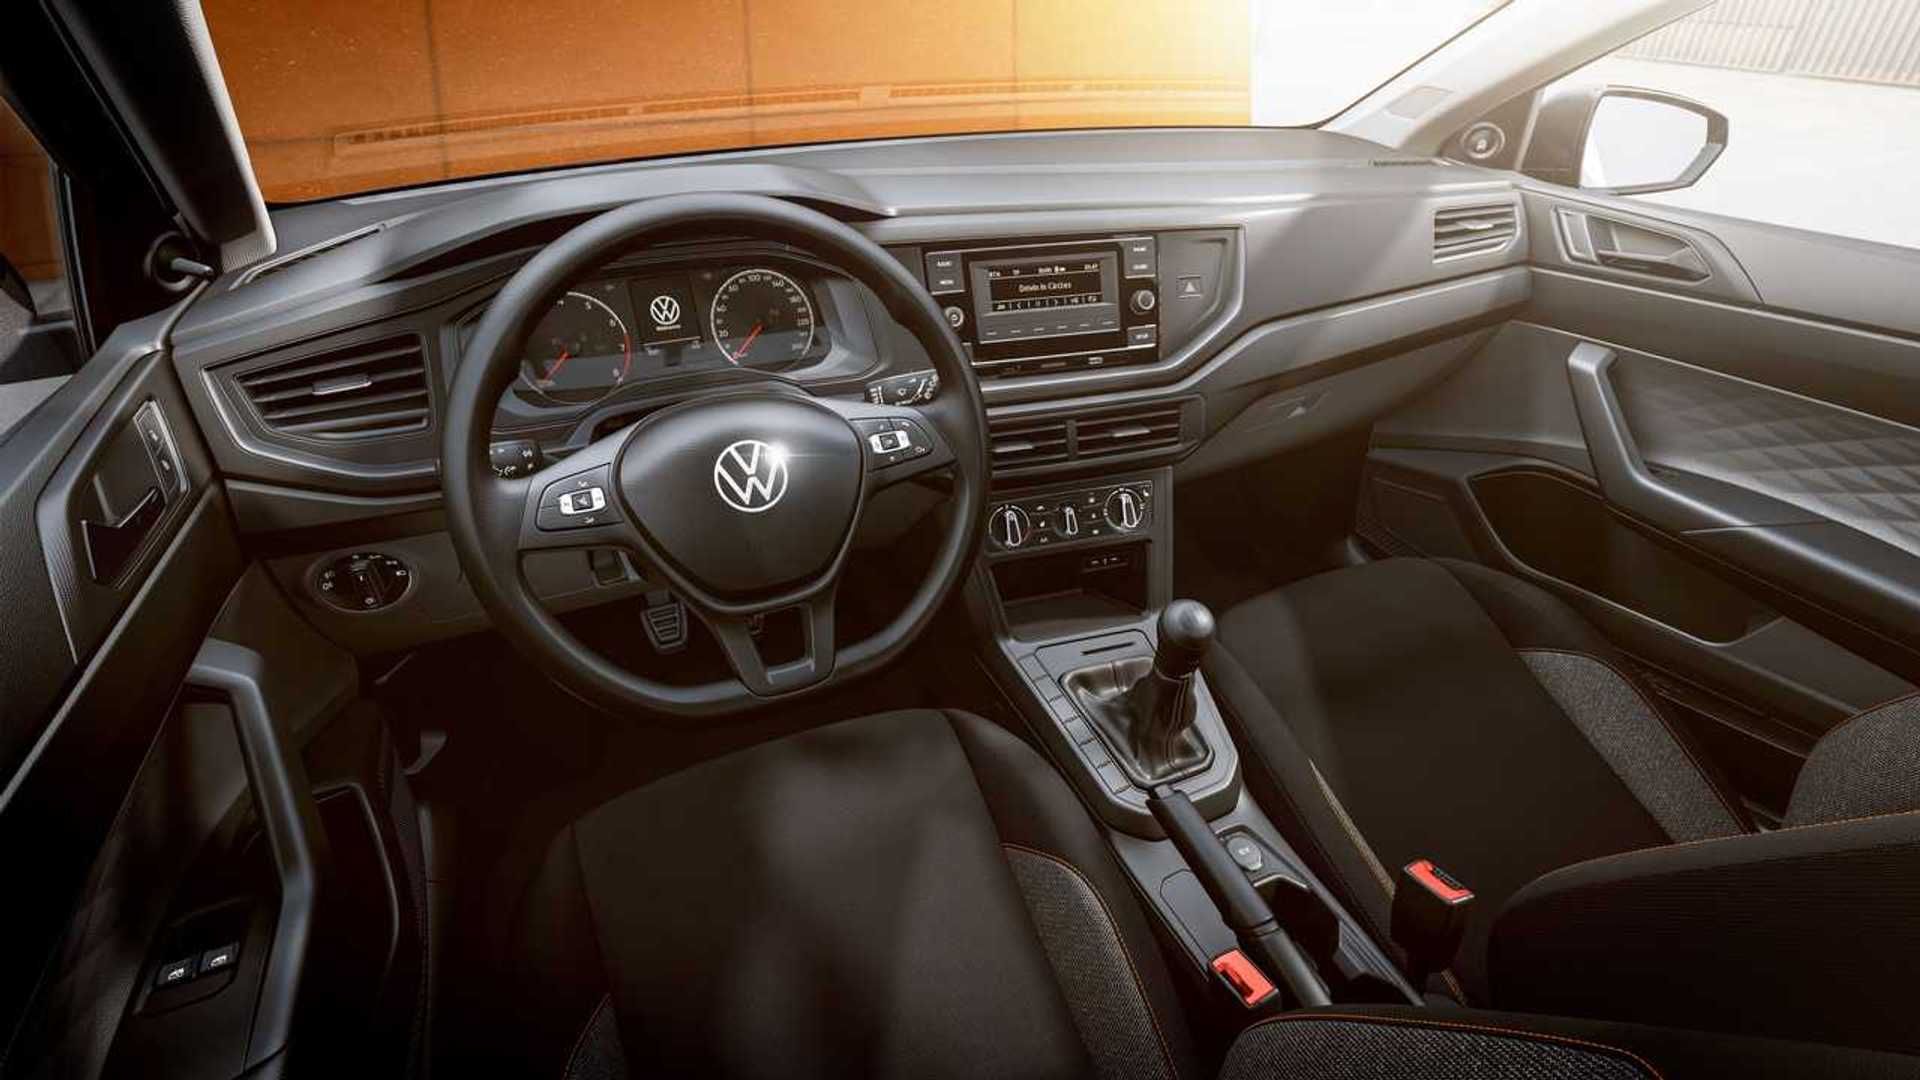 ¿Cuál es el precio del Volkswagen más económico del mercado? Parabrisas